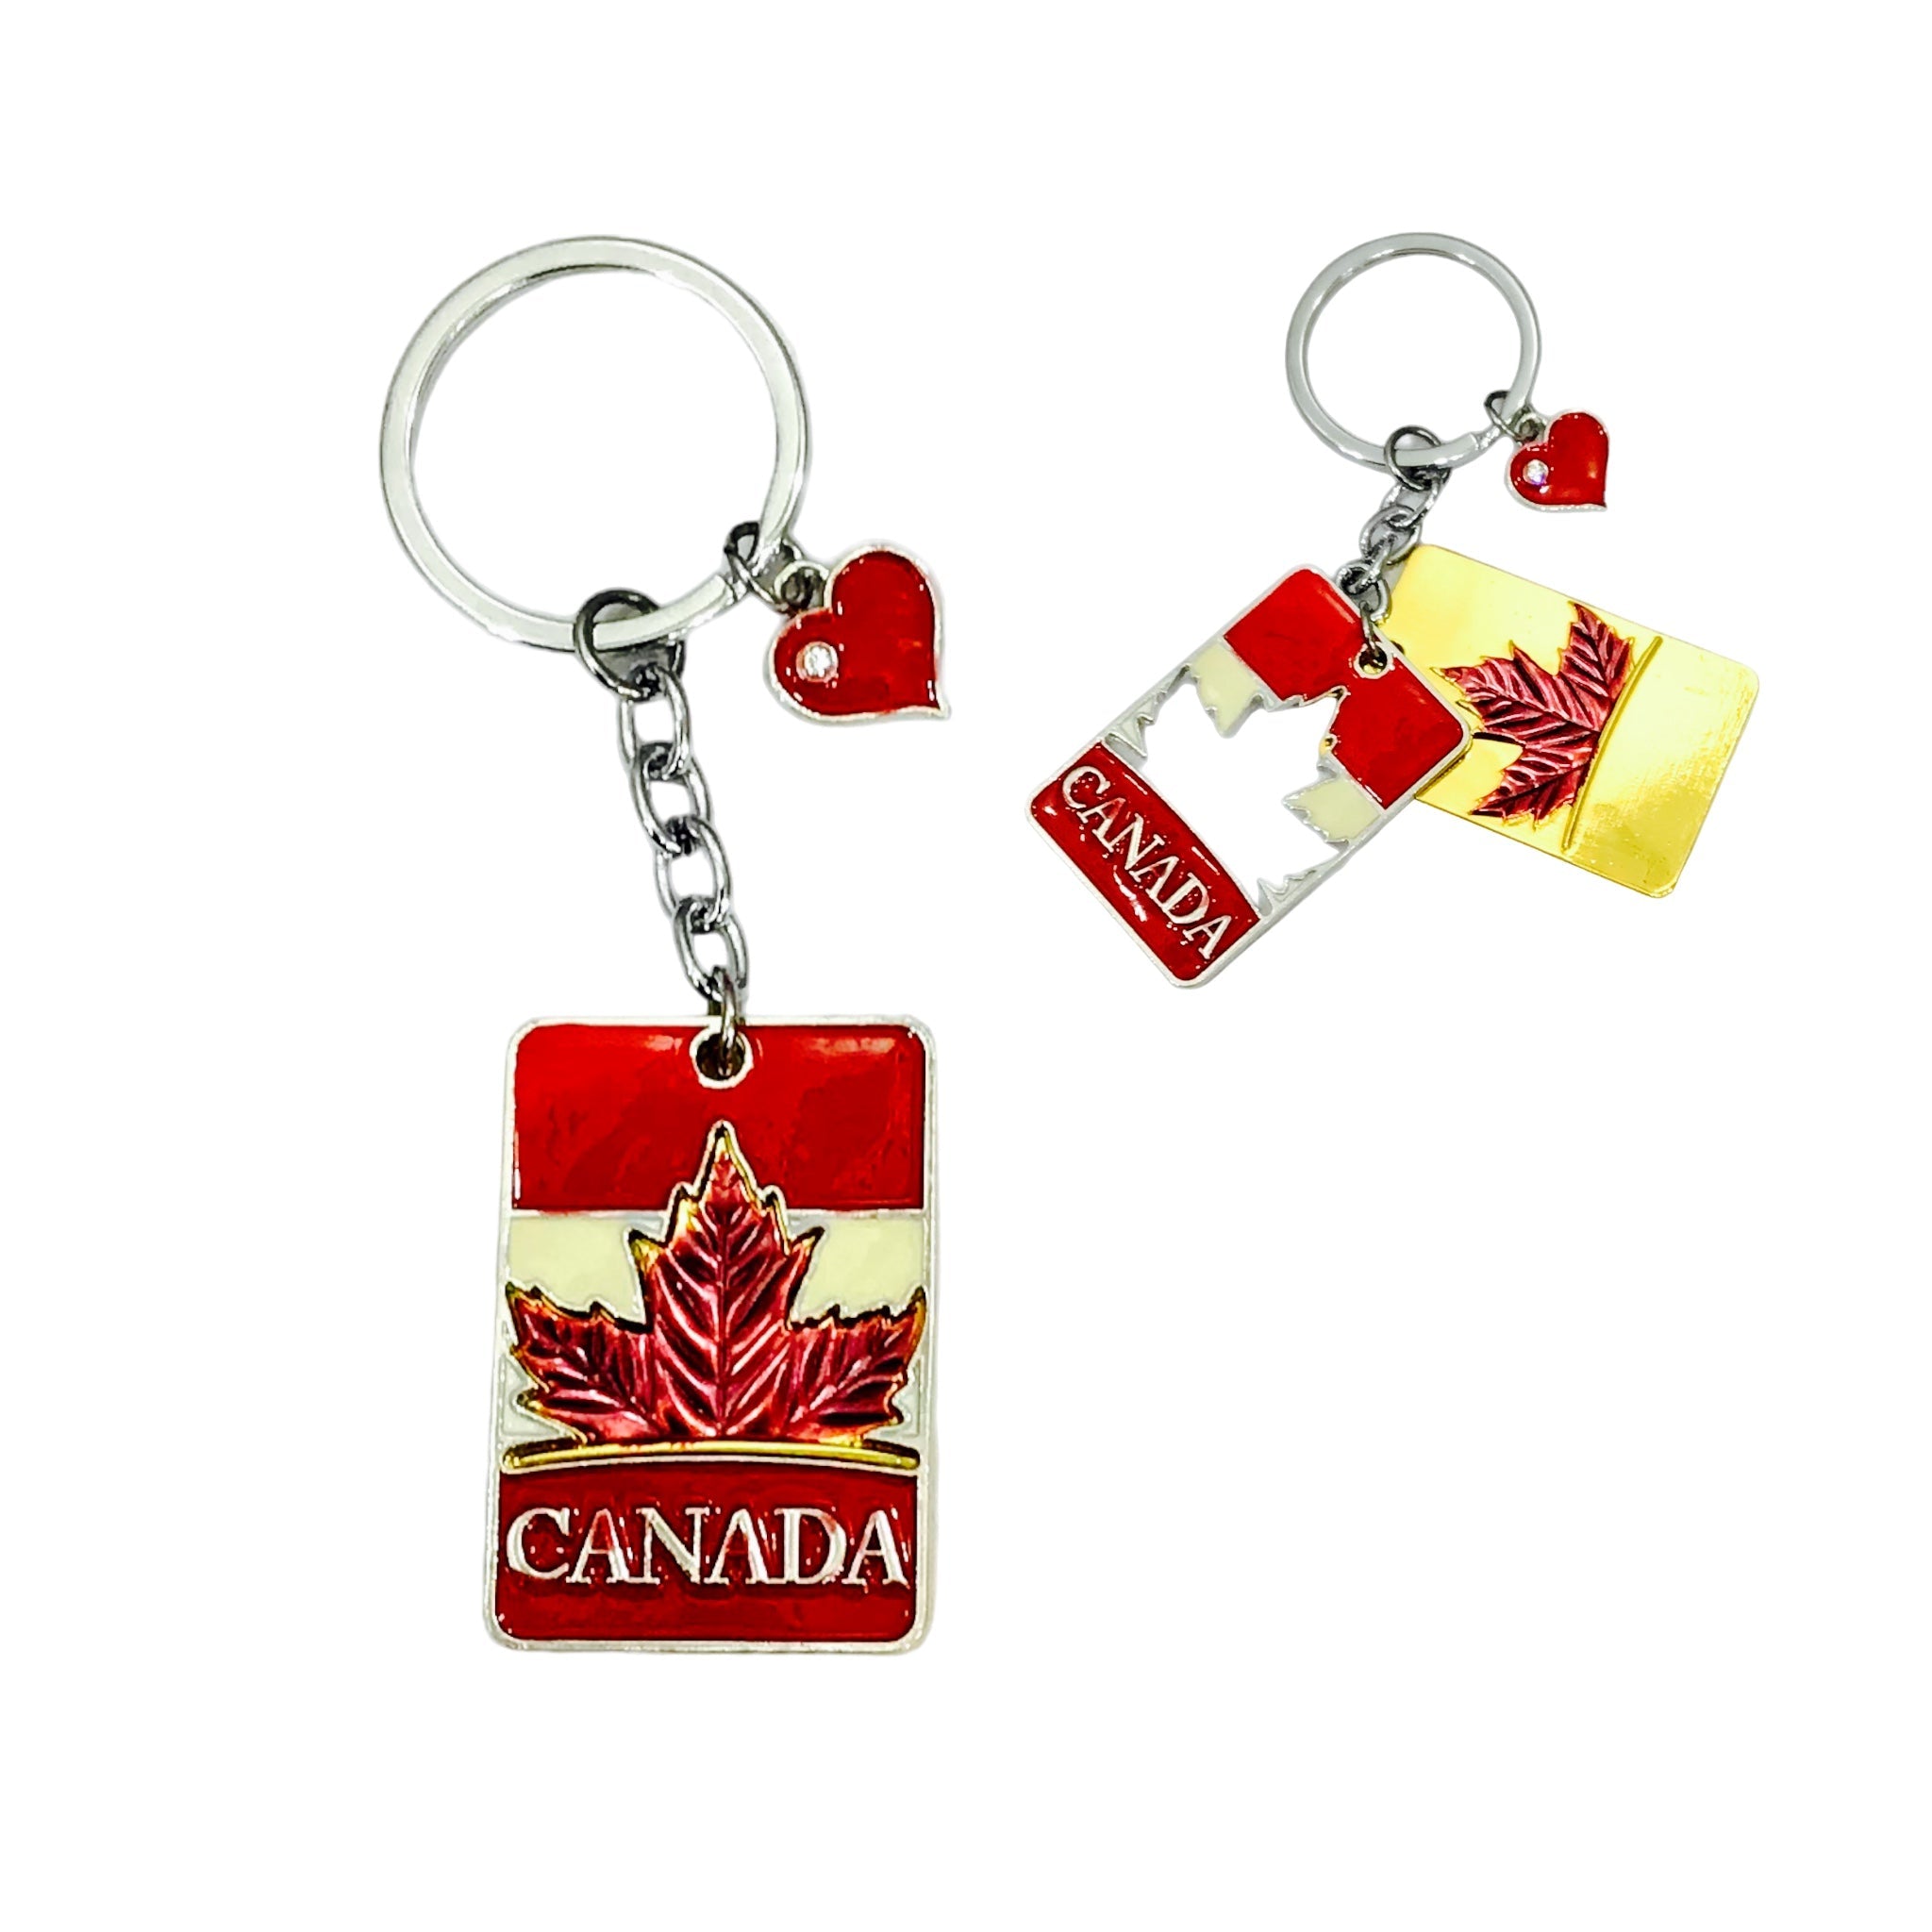 Keychain - Canada Maple Leaf Keyring with Heart Charming Key Fob